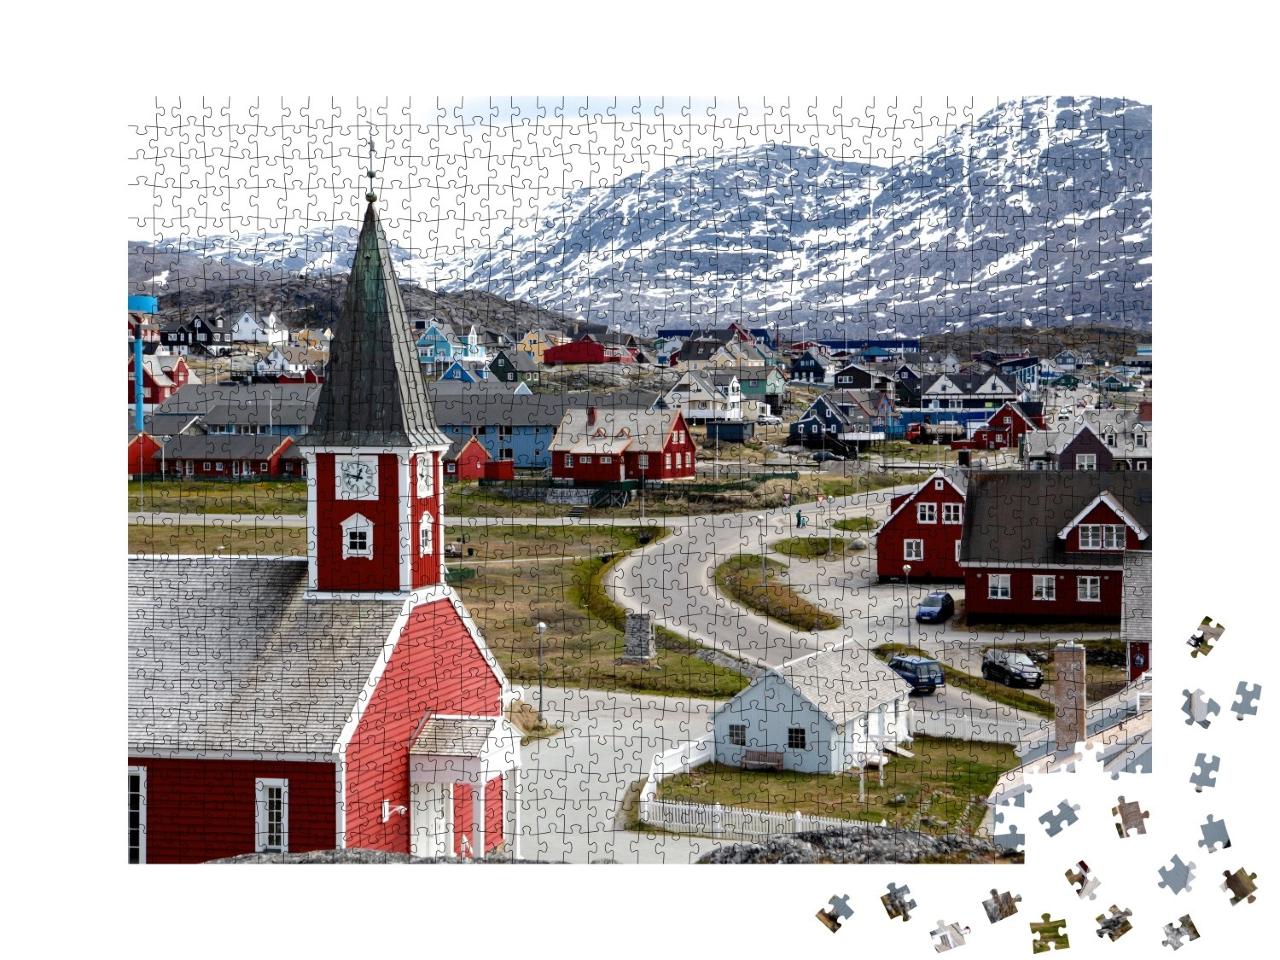 Puzzle de 1000 pièces « Cathédrale de Nuuk dans la capitale du Groenland »